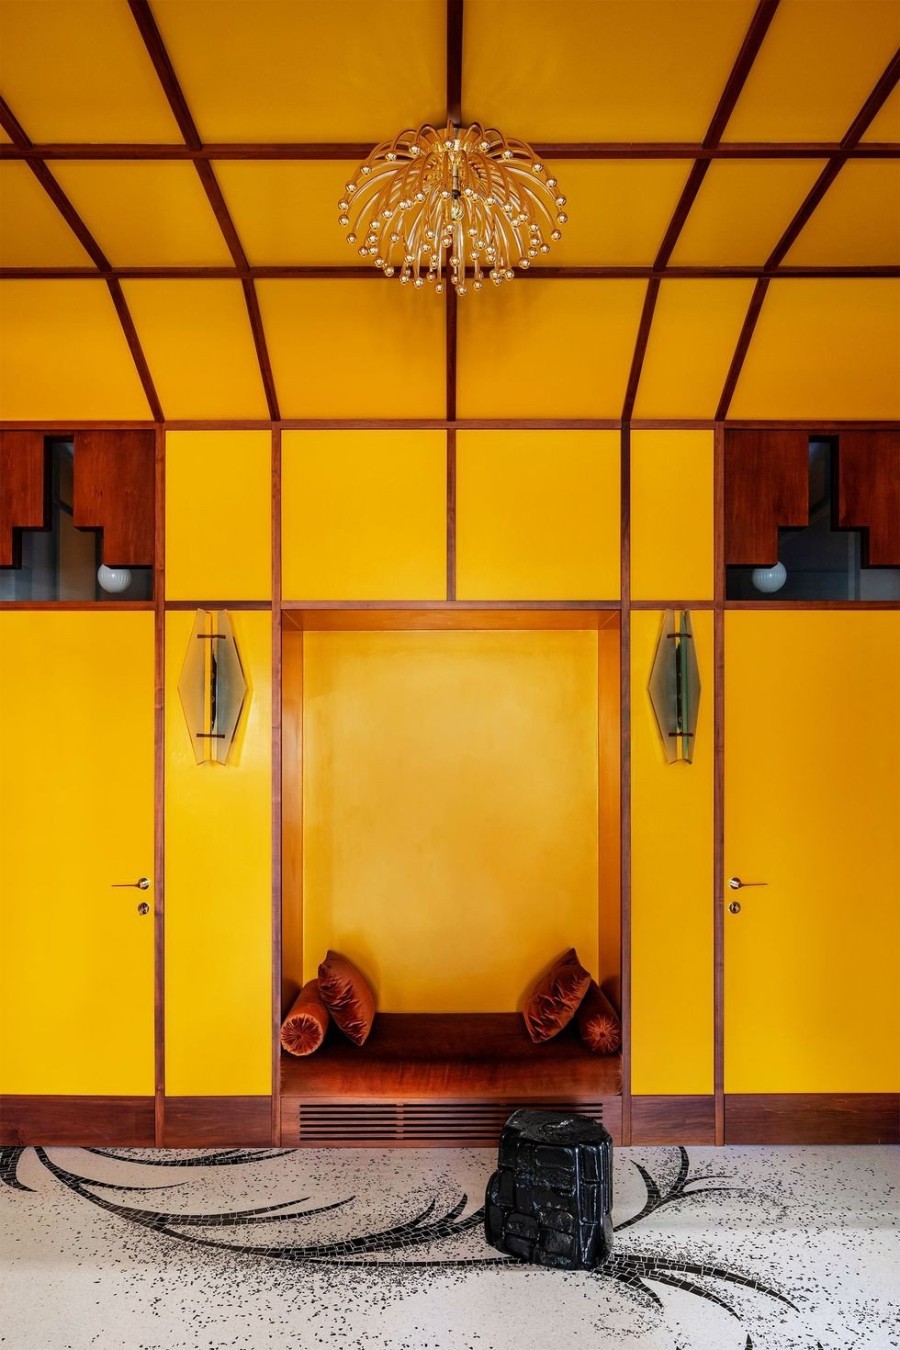 Ένα διαμέρισμα στο Μιλάνο σχεδιασμένο με τον πιο τολμηρό τρόπο, γεμάτο colorful στοιχεία- Φωτογραφία 5